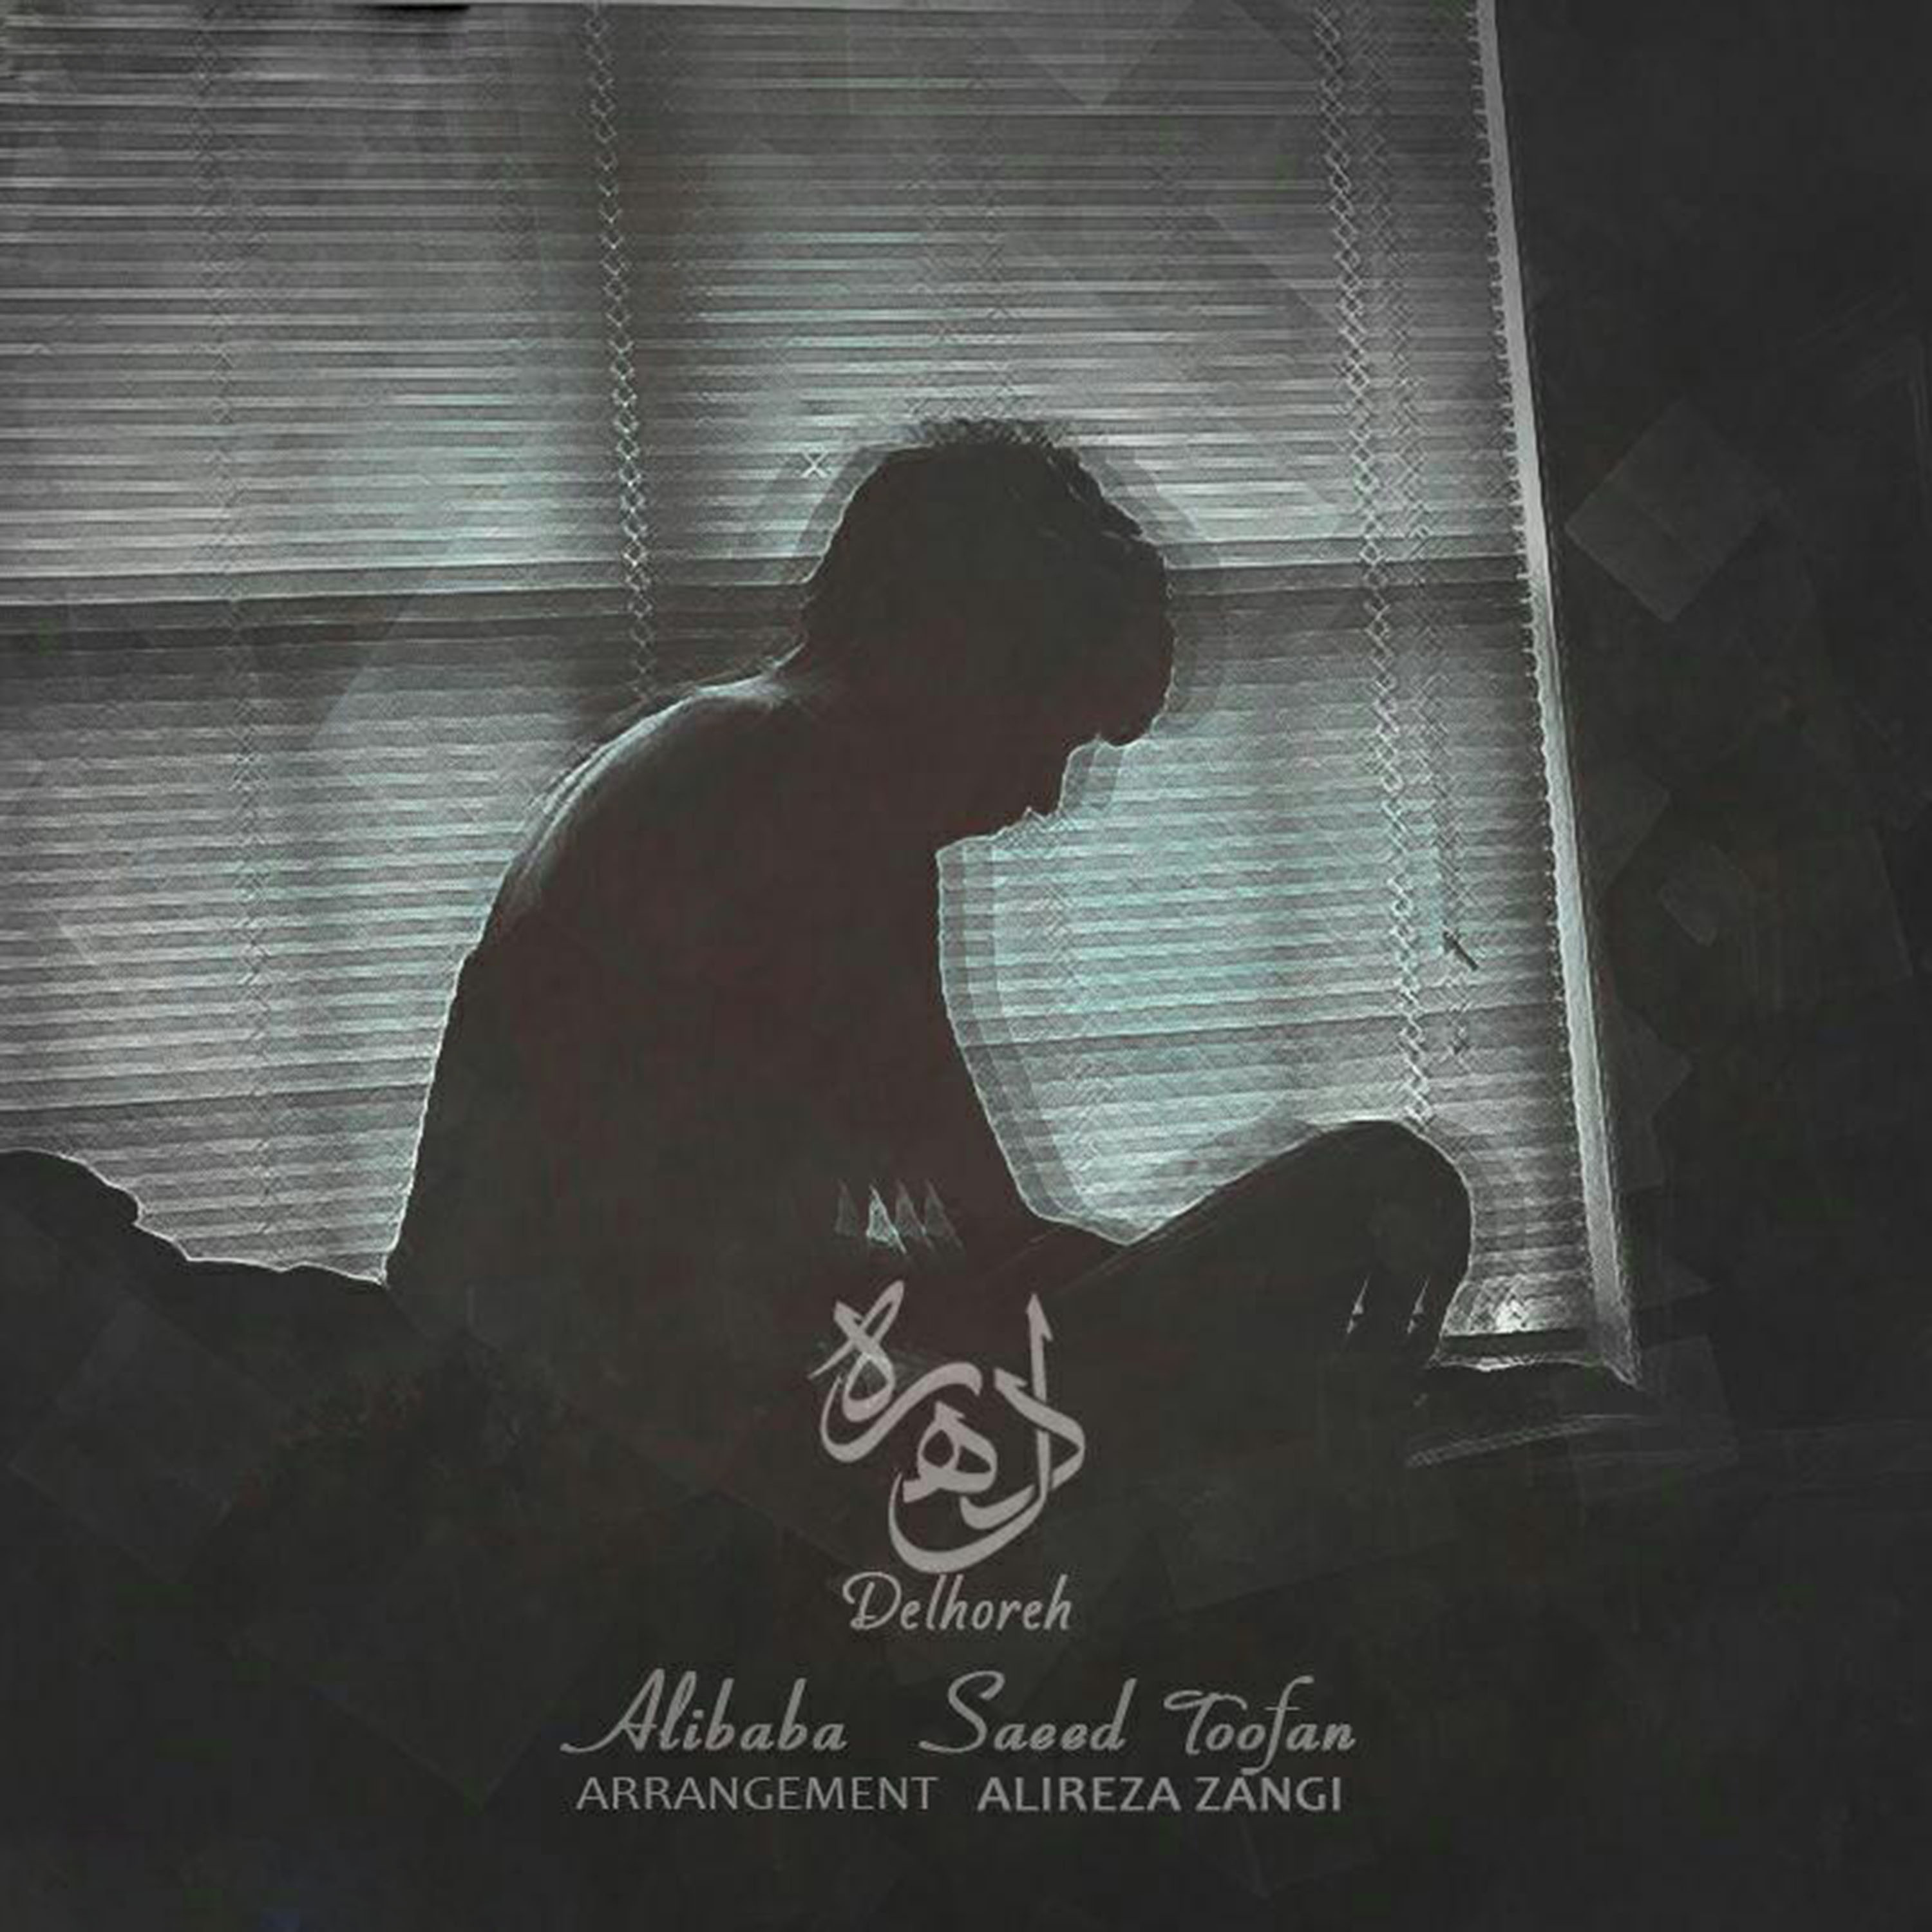  دانلود آهنگ جدید علی بابا - دلهره | Download New Music By Ali Baba - Delhore (feat. Saeed Toofan)